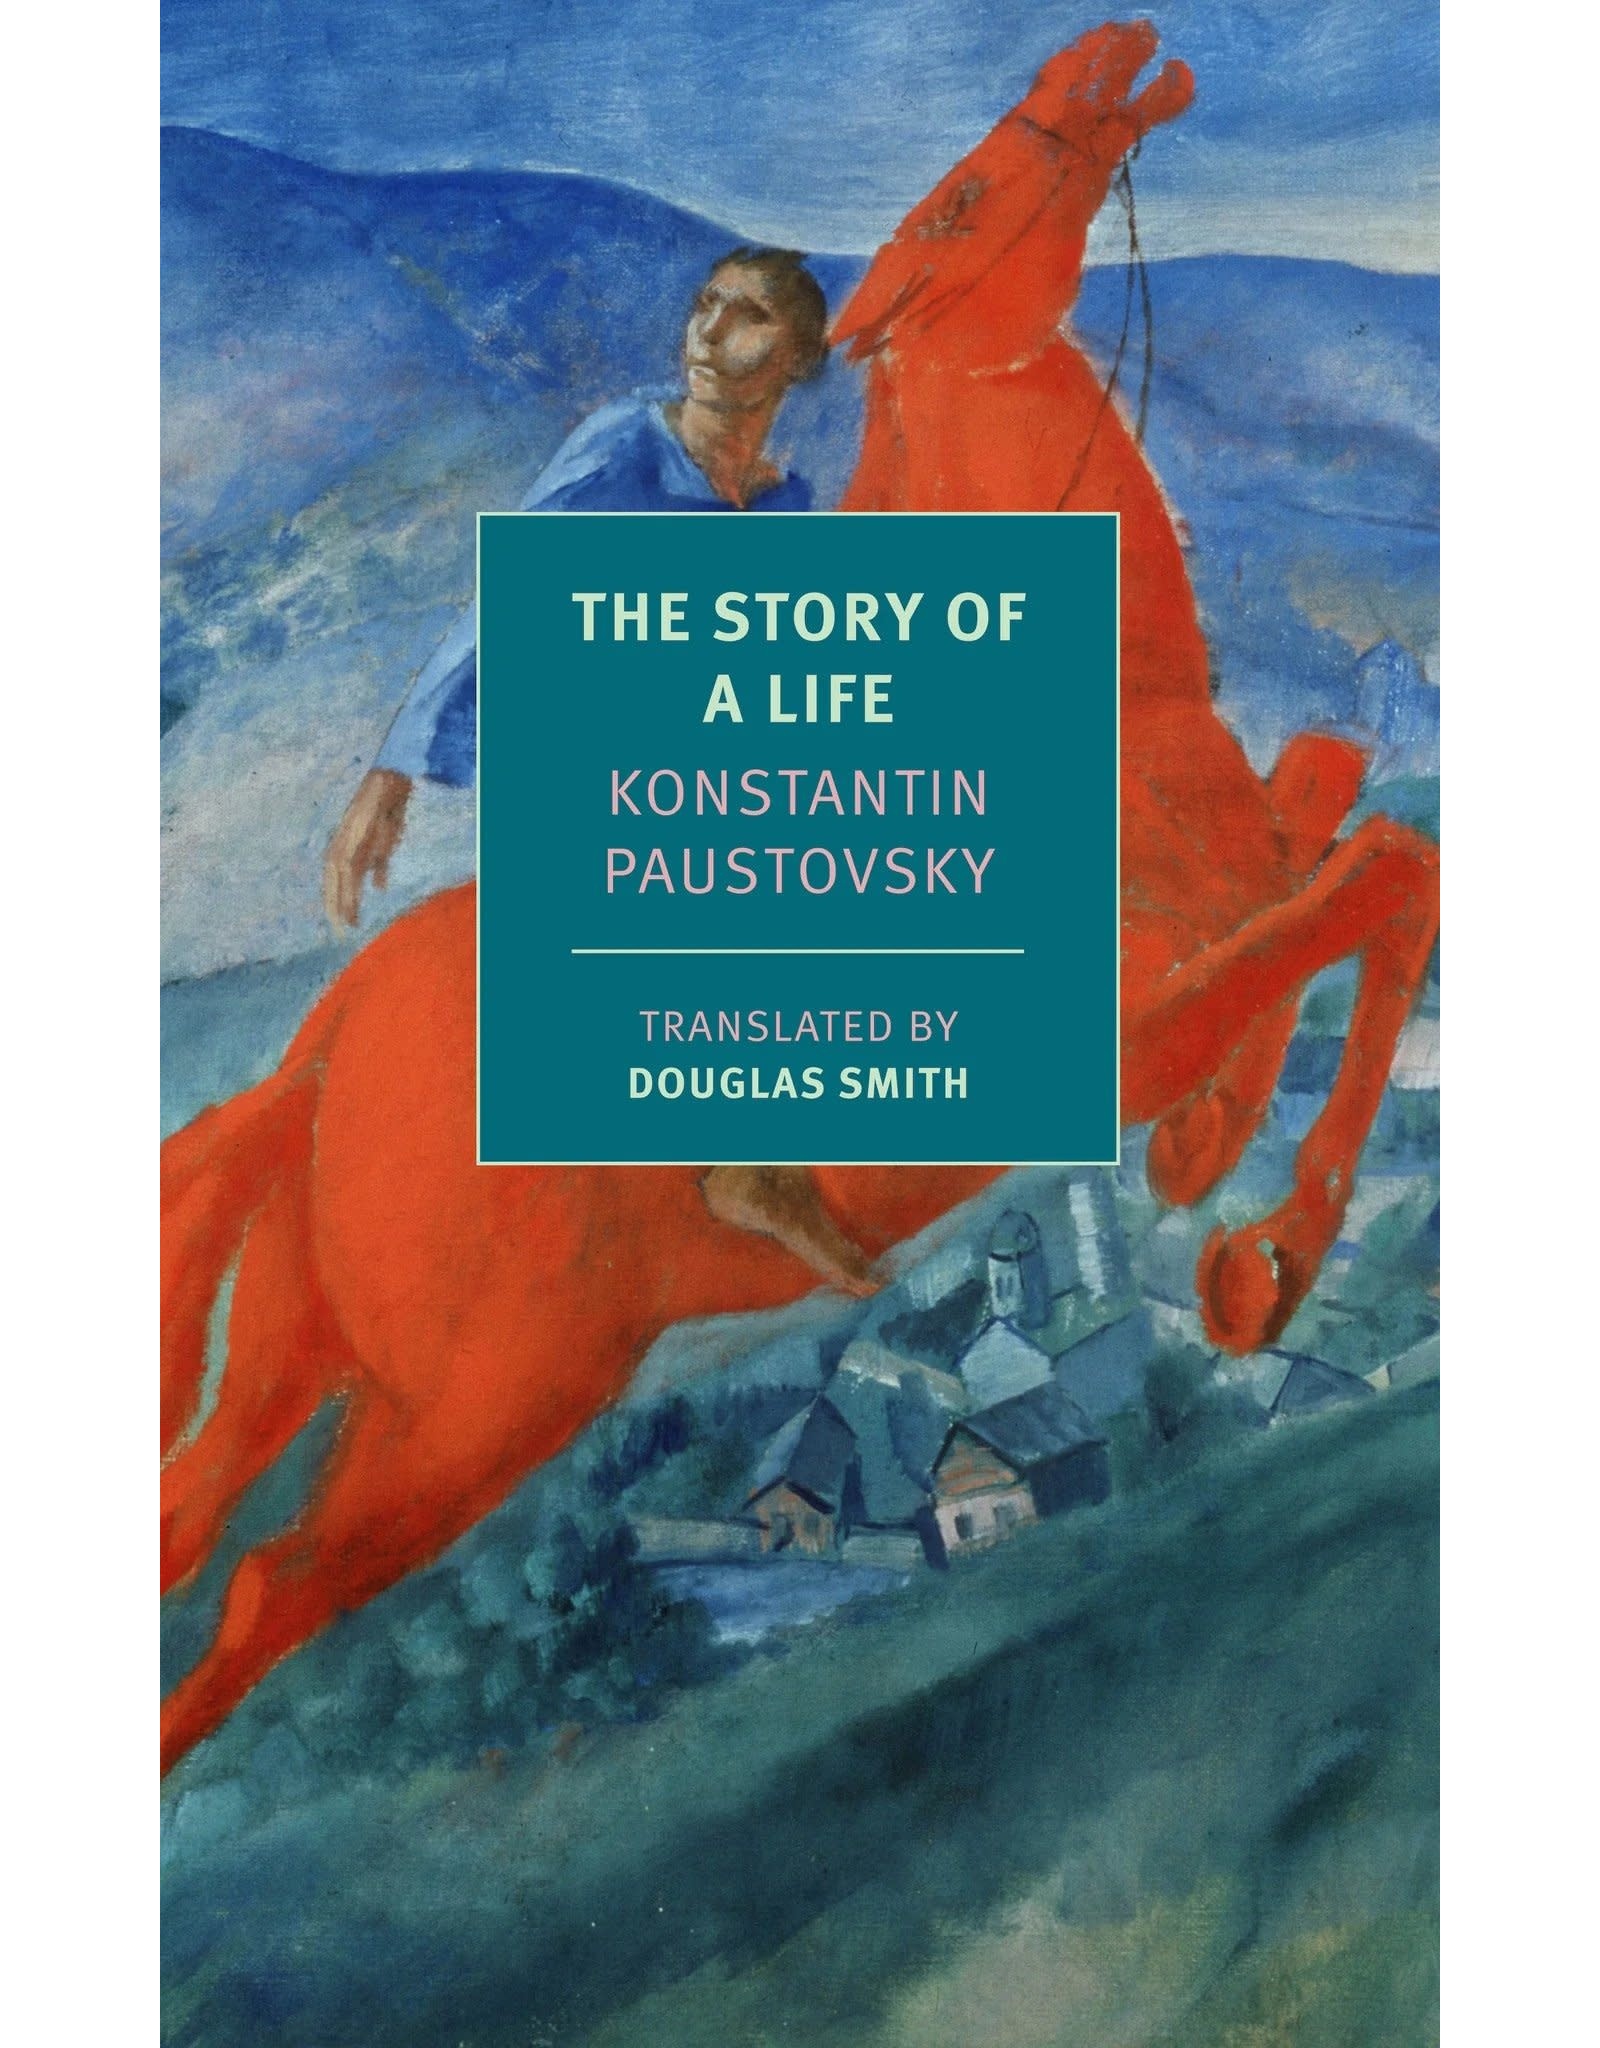 The Story of a Life: Konstantin Paustovsky